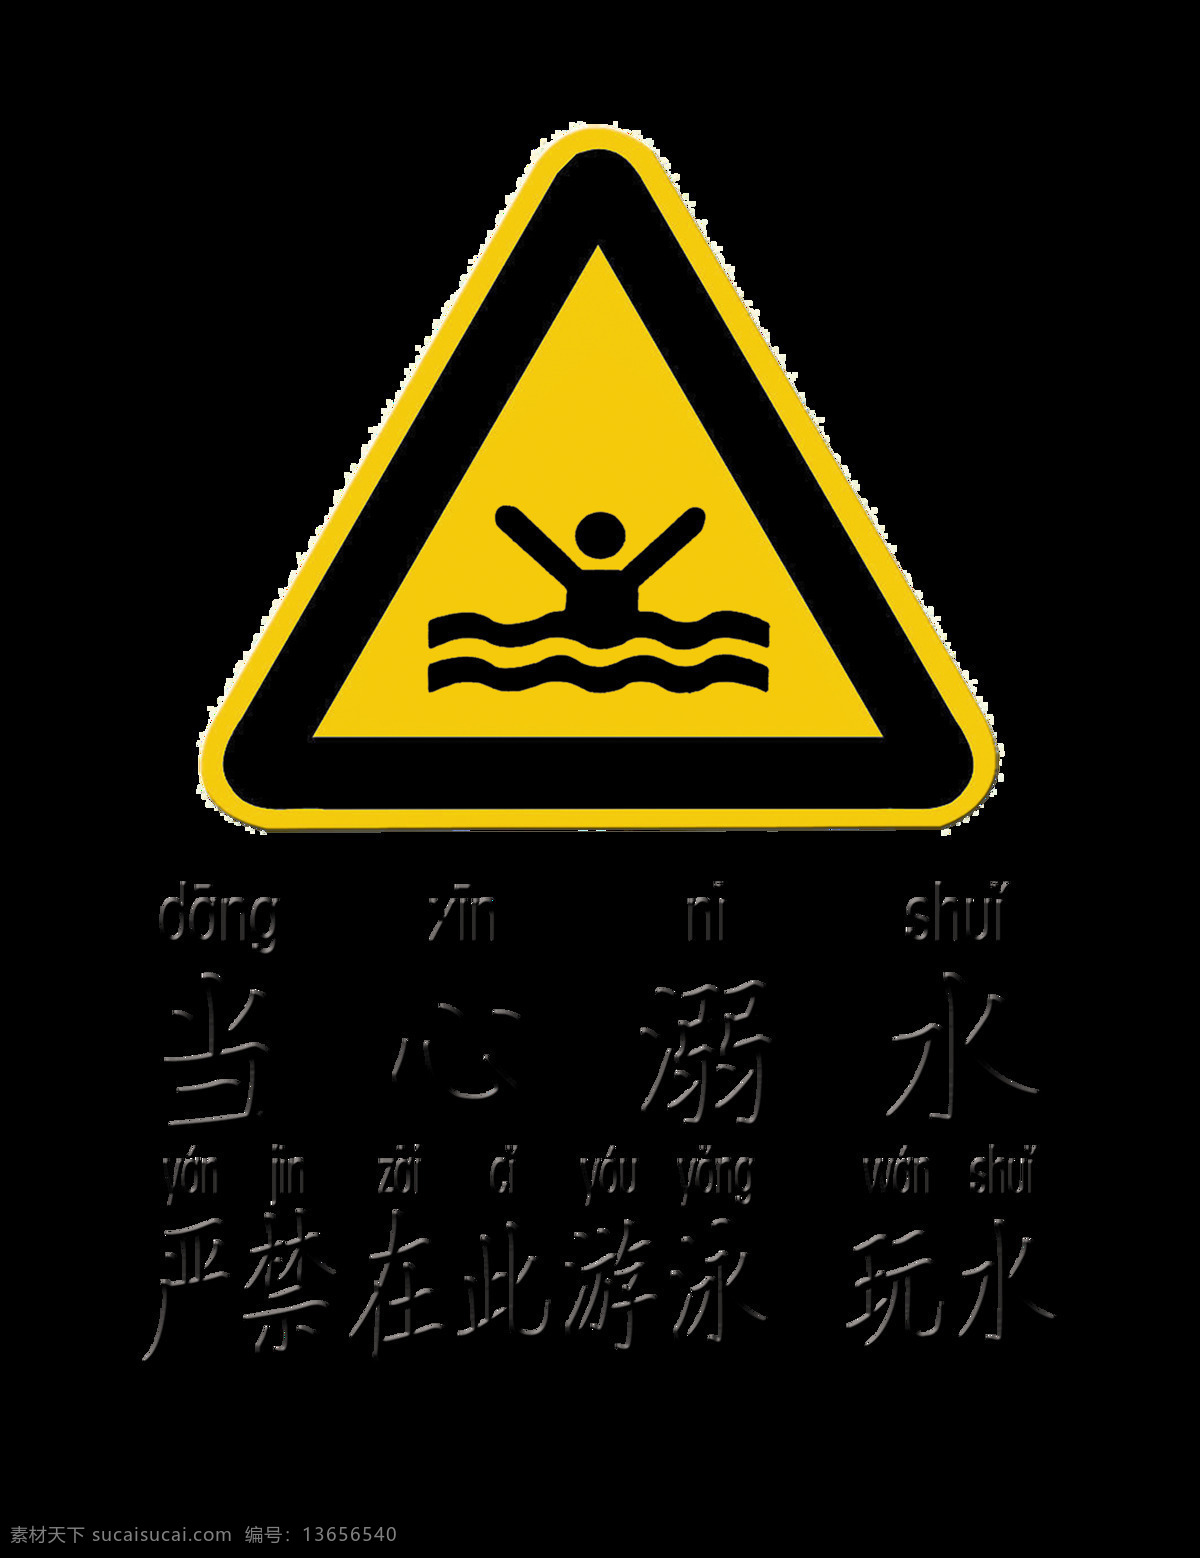 当心 溺水 严谨 游泳 玩 水 艺术 字 注意 安全 公益 牌子 元素 艺术字 禁止下水 警告 安全第一 注意安全 生命大于一切 警告牌